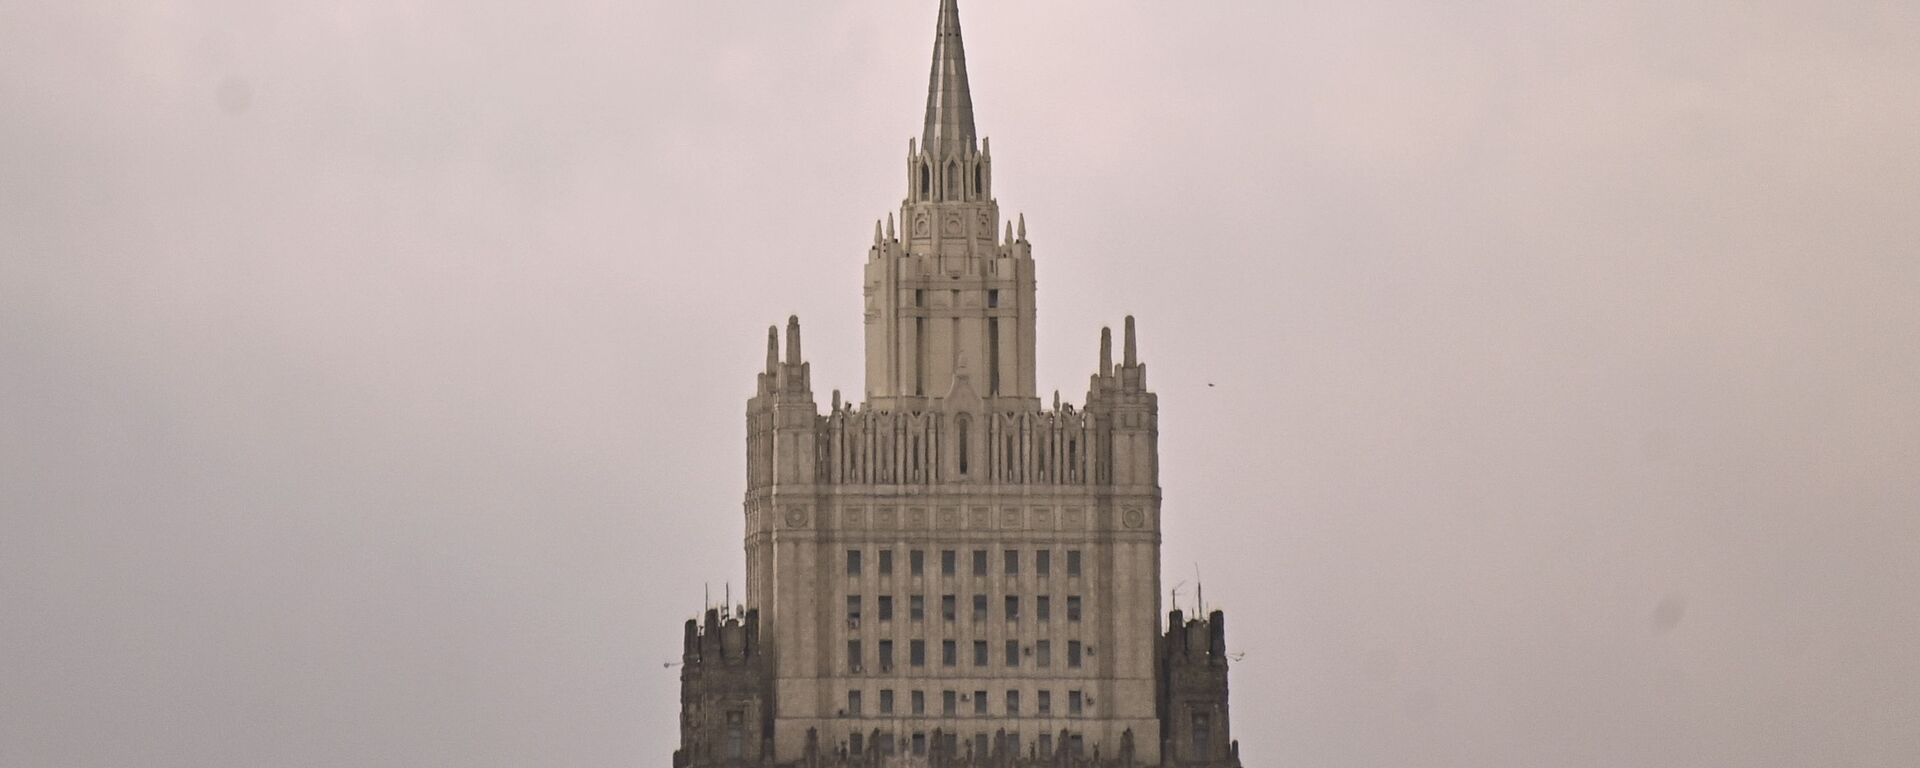 Зграда Министарства спољних послова Русије у Москви - Sputnik Србија, 1920, 09.03.2021